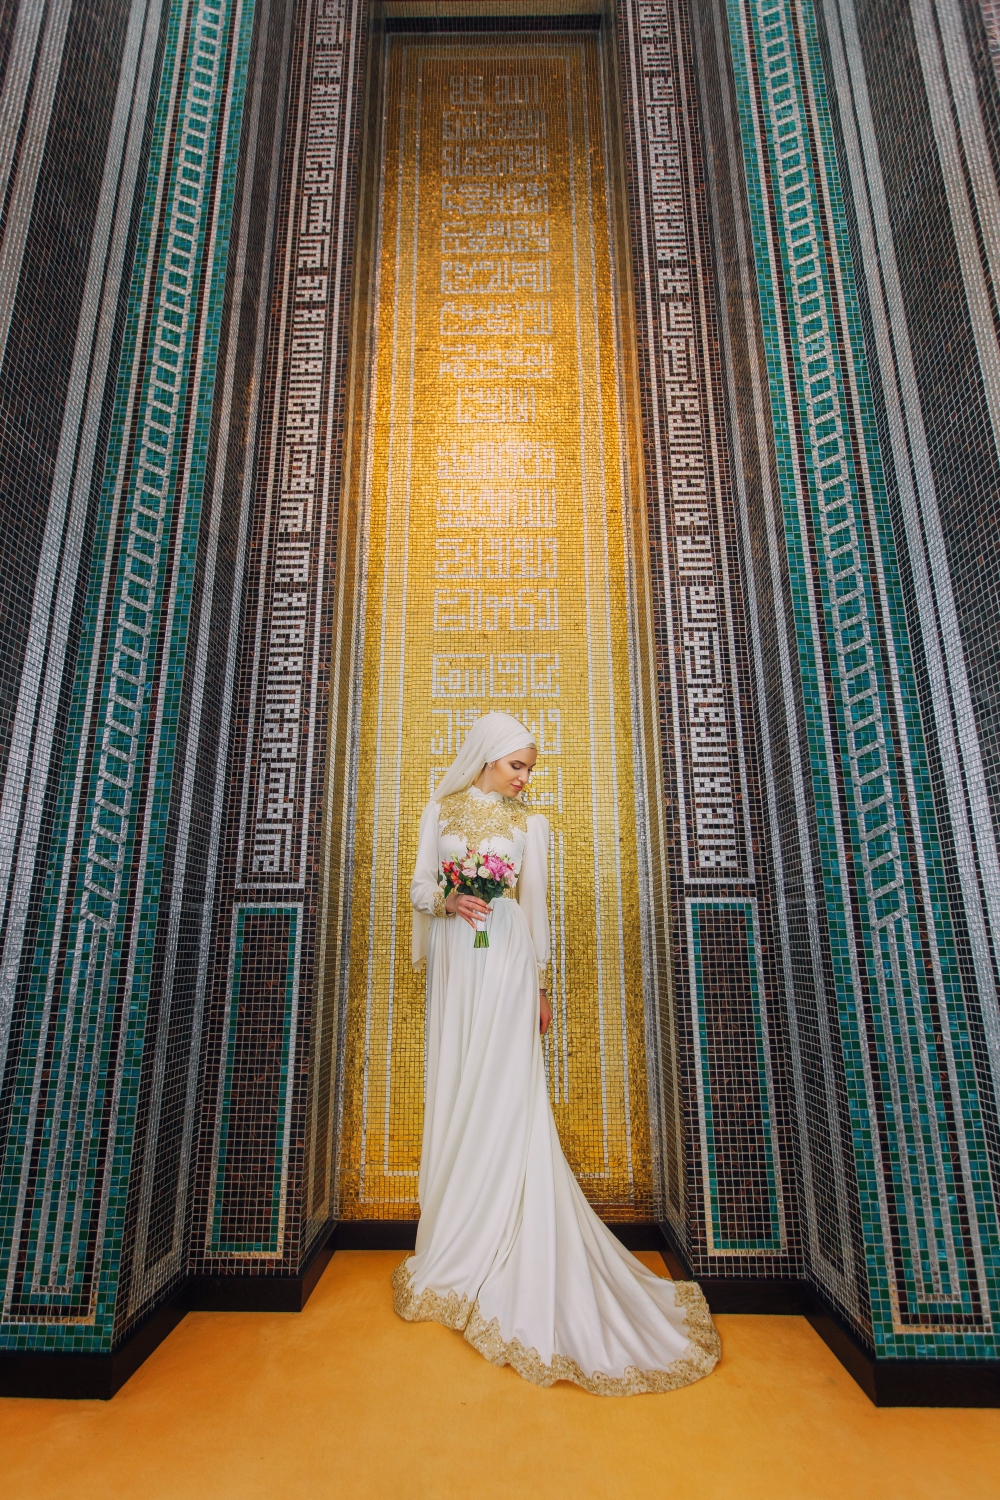 Фотограф на свадьбу и никах казань, Марат Ахметзянов 89053766422